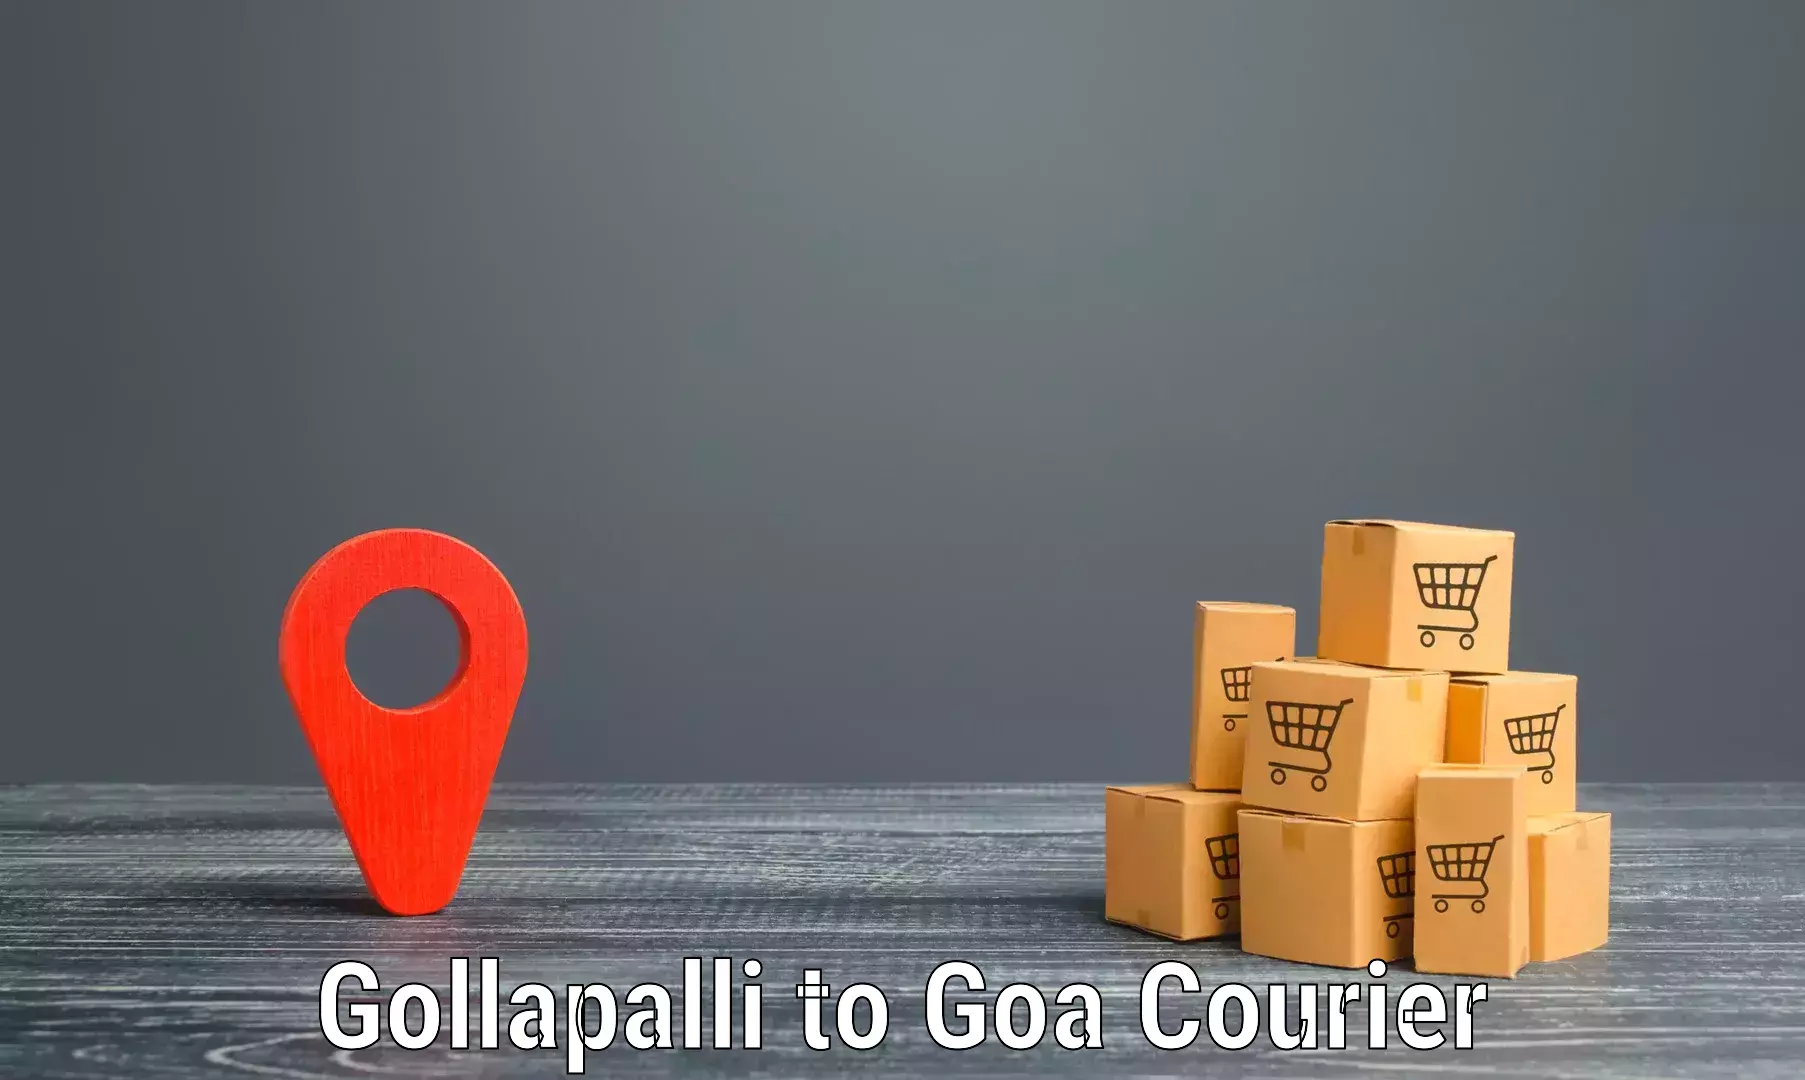 Premium delivery services Gollapalli to Panaji